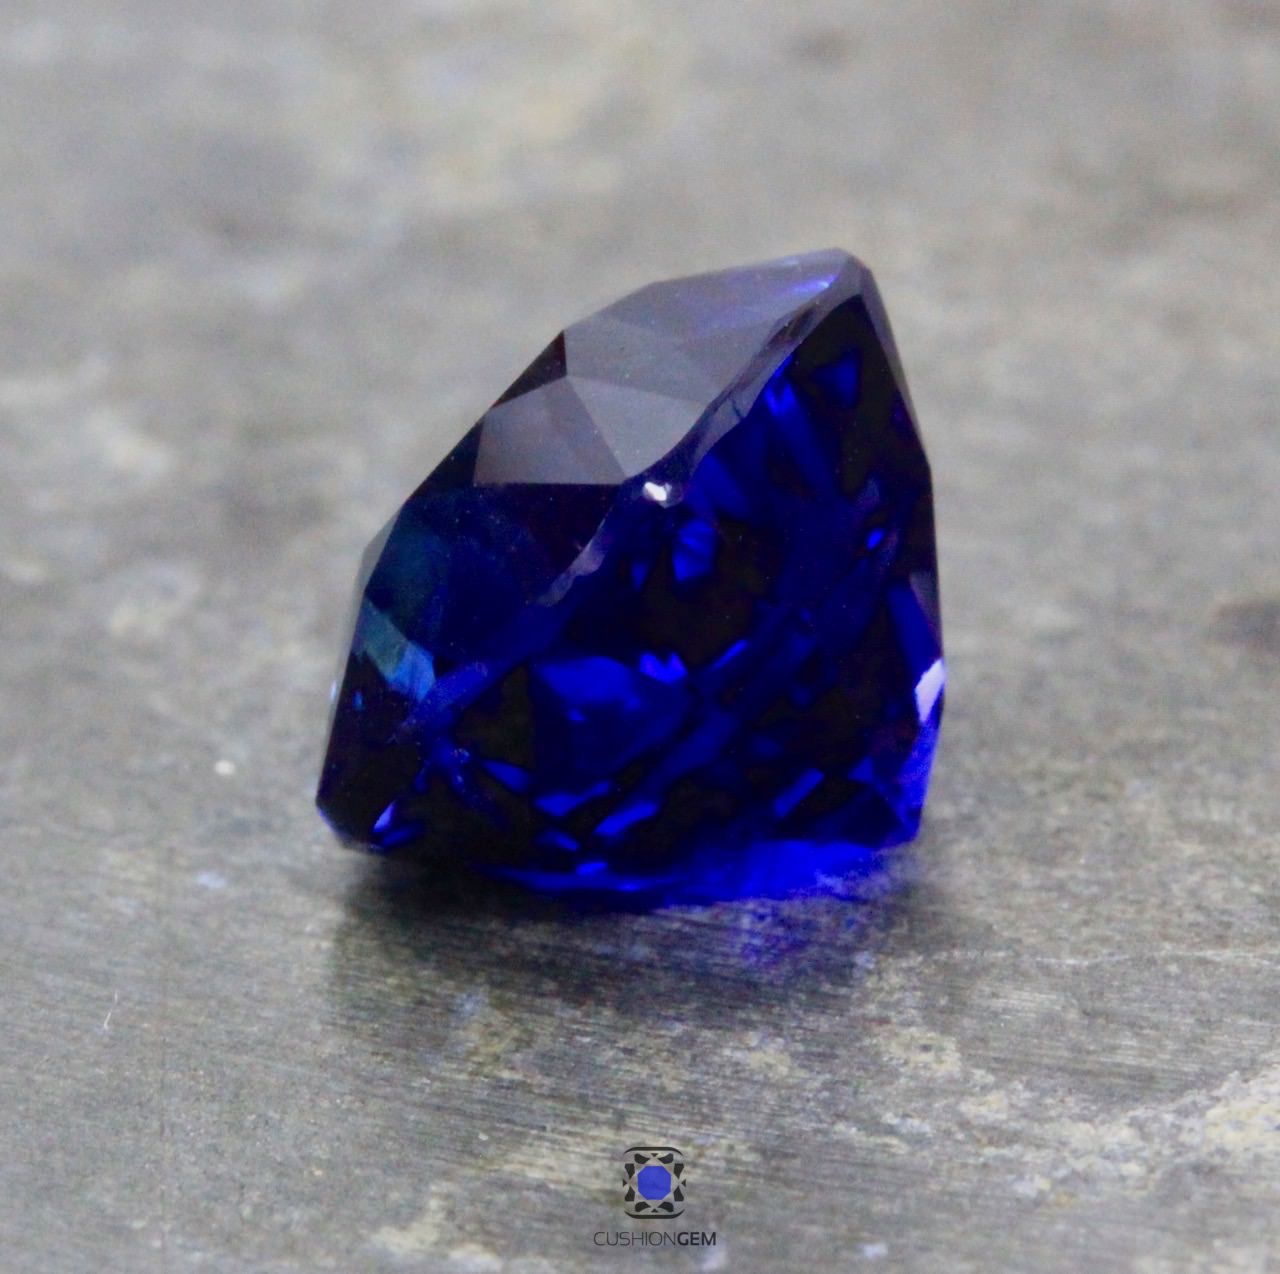 4.05 ct. Cushion Un-heated Sapphire — Cushion Gem: Precious Gems of Color